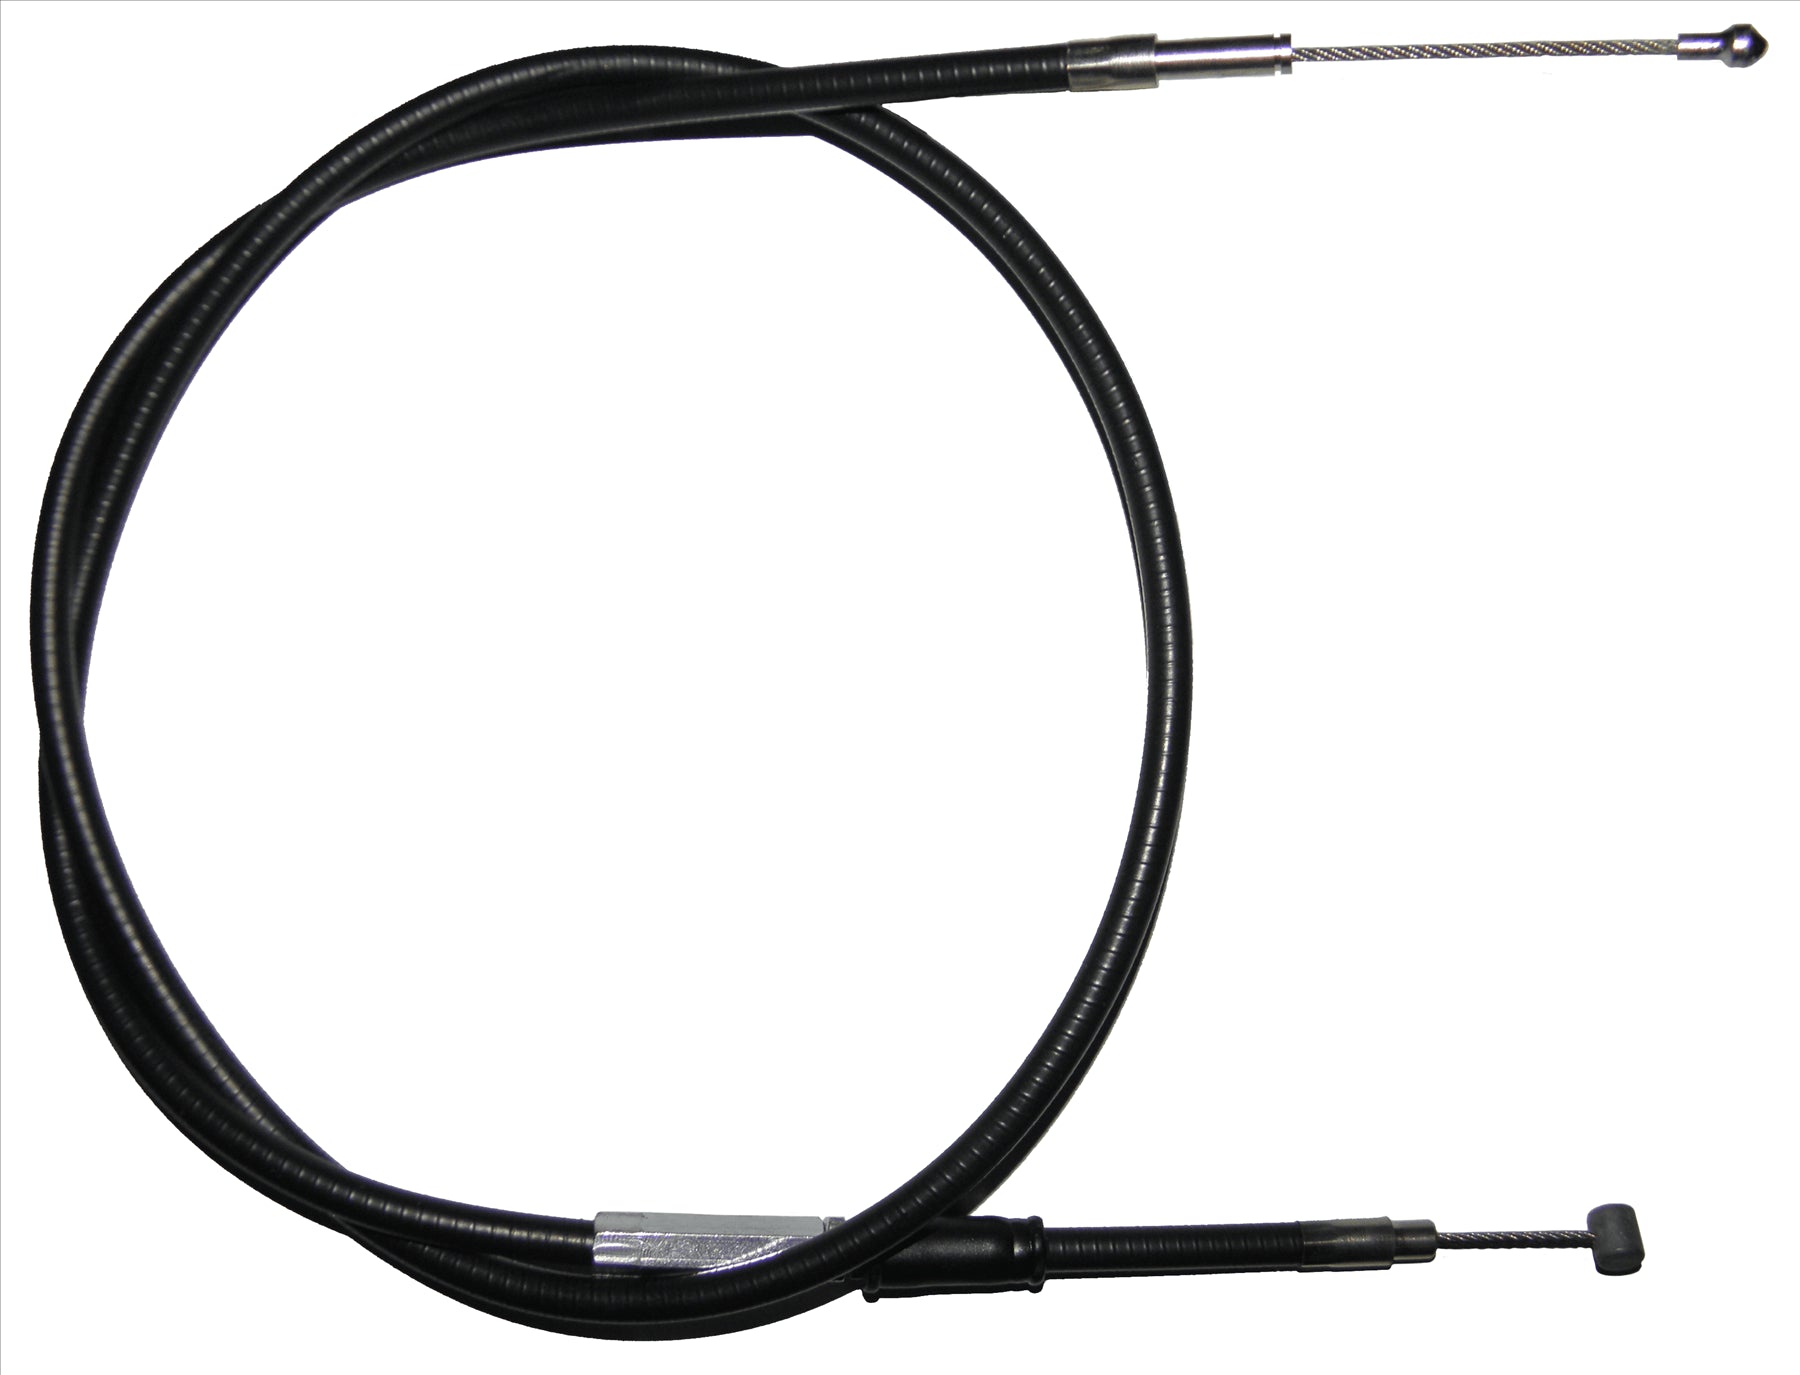 Apico Black Clutch Cable For KTM SC 620 1994-1998